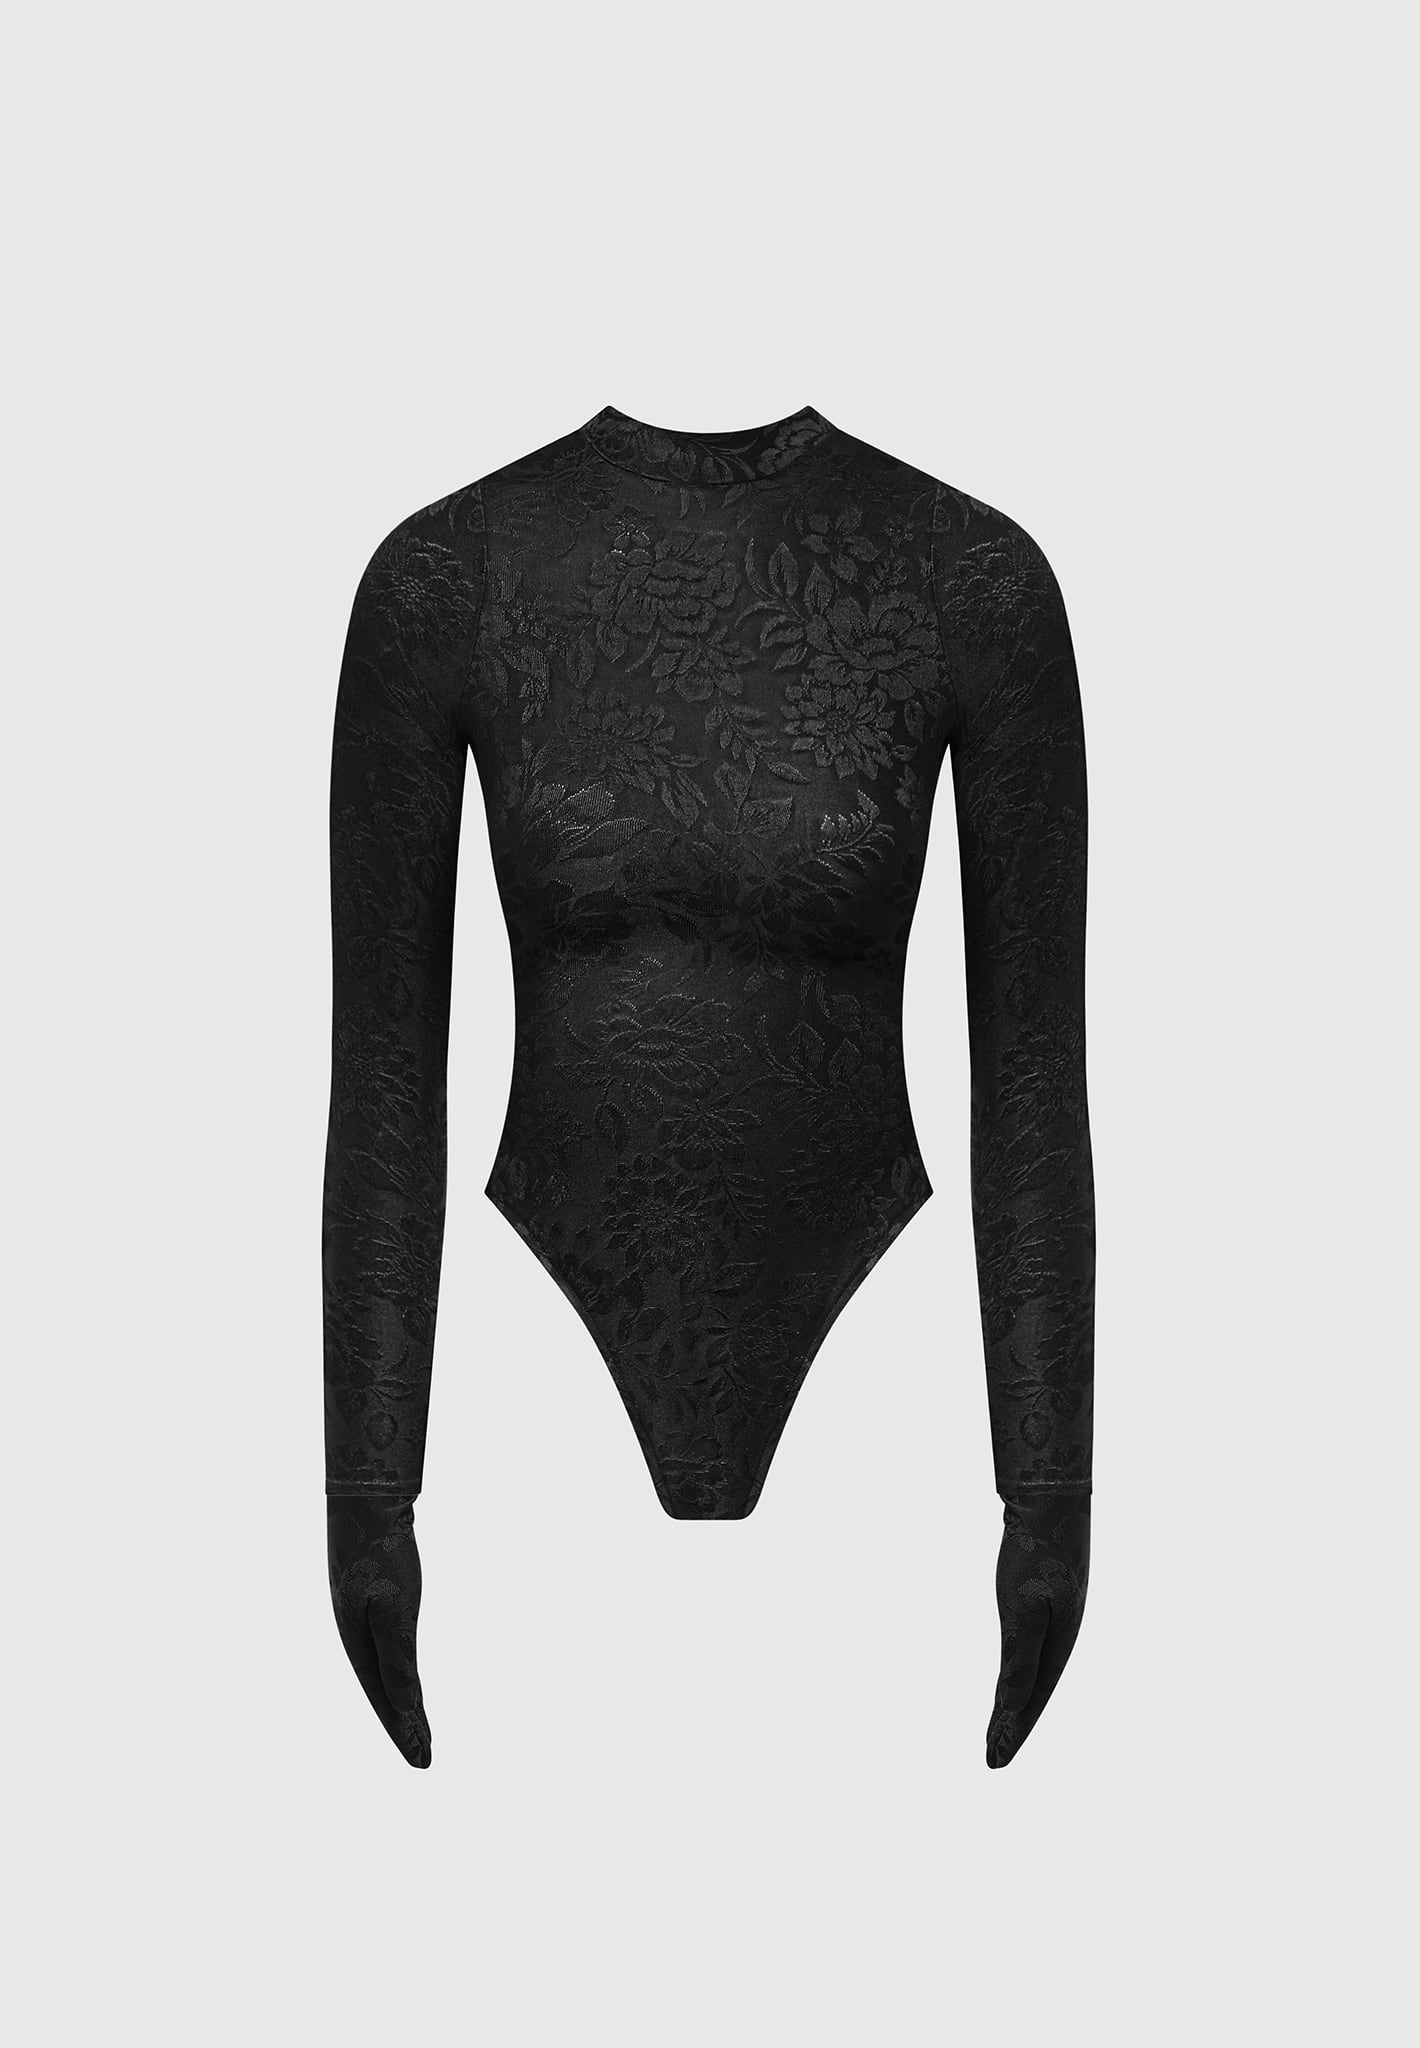 Vogue 9298: Deep Plunge Neckline Bodysuit — strictstitchery